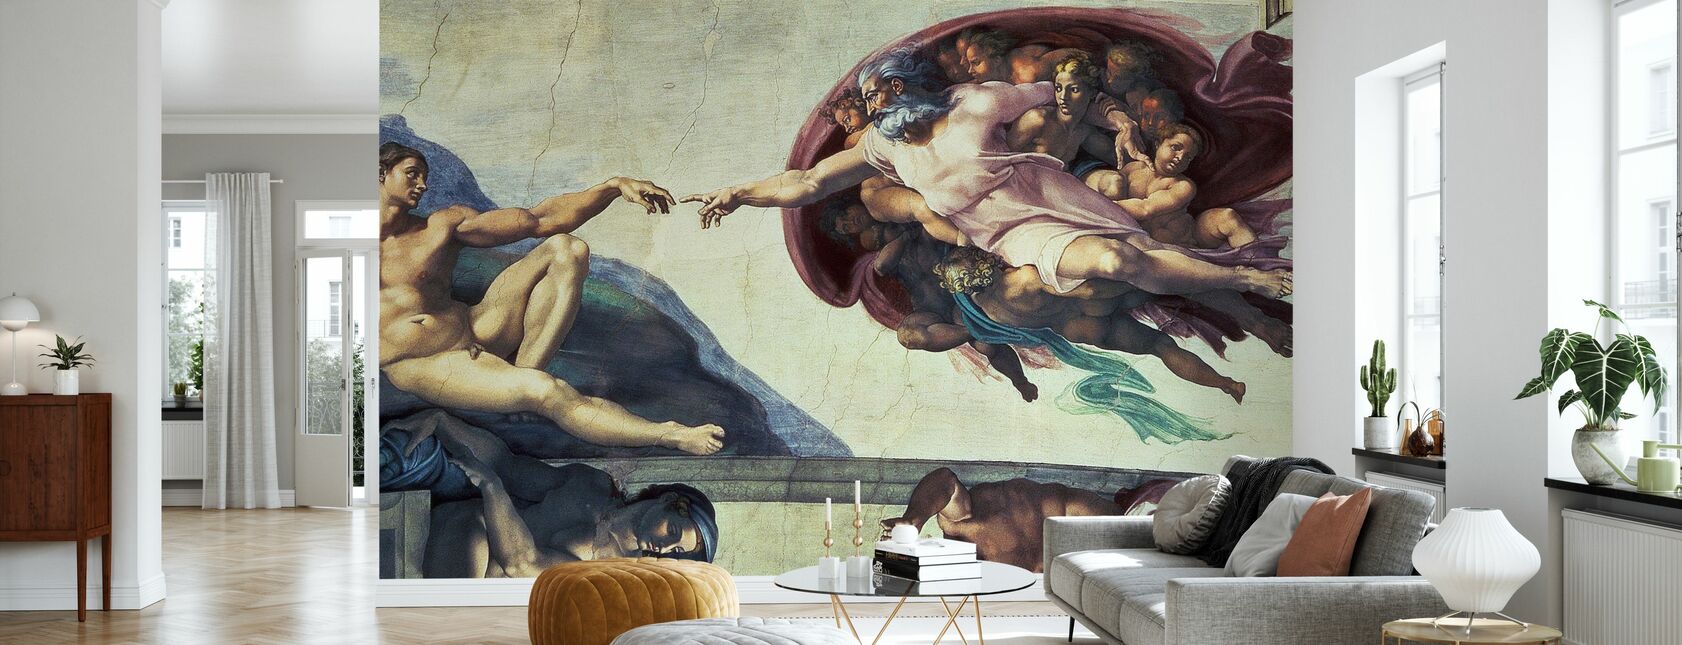 Creation of Adam - Michelangelo Buonarroti - Wallpaper - Living Room